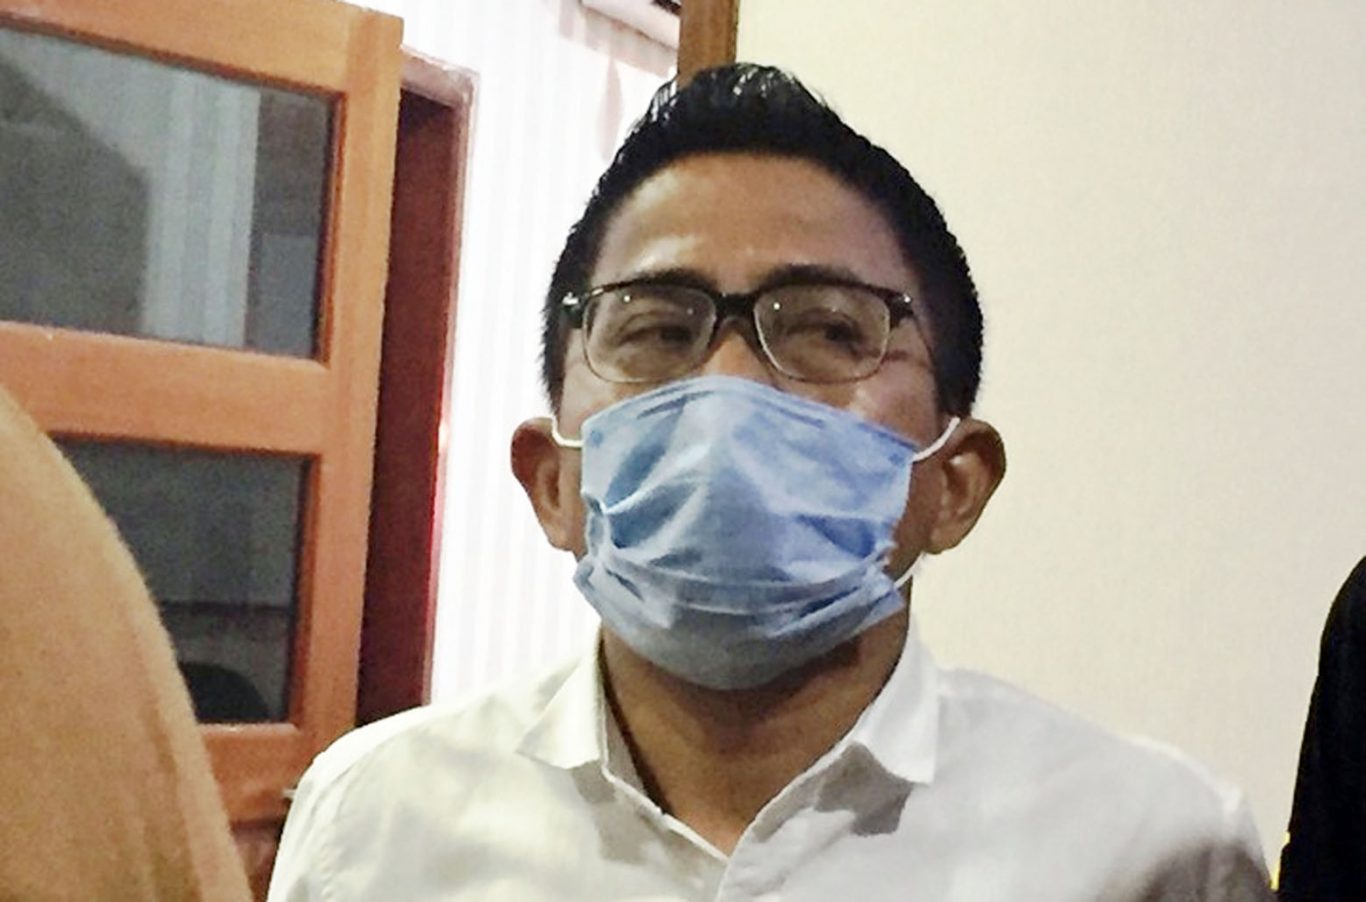 DPRD Mengkritisi Sejumlah Program Pemkot Tangerang yang Masih Mandek